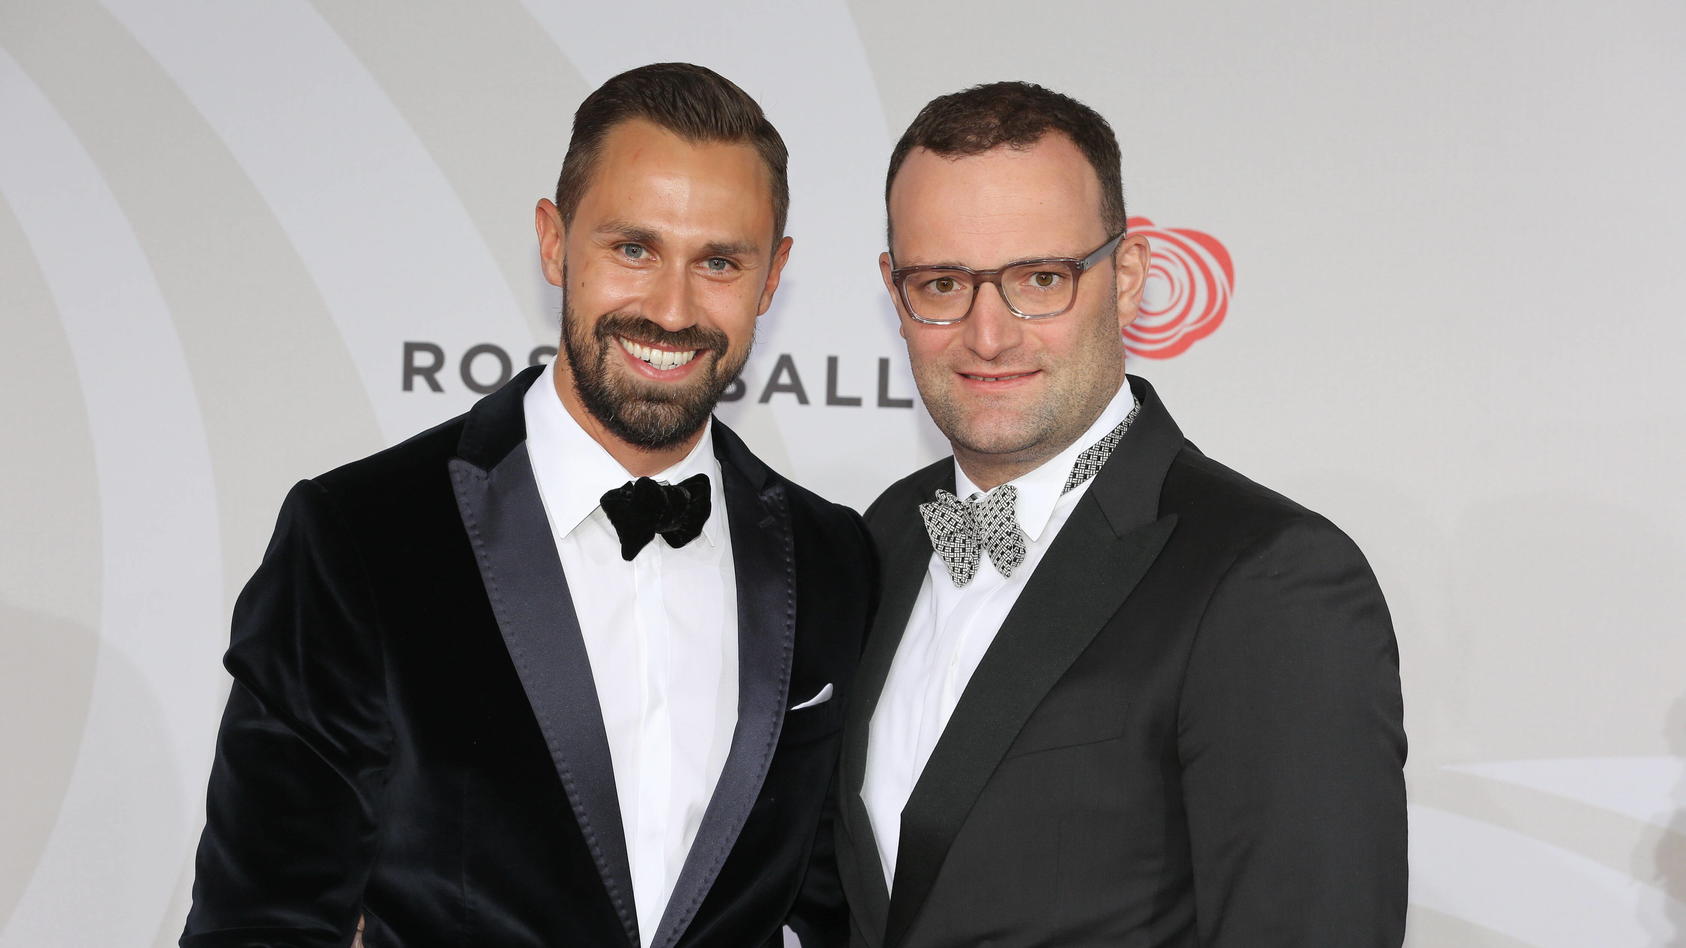 Daniel Funke und Freund Jens Spahn auf dem roten Teppich zum Bertelsmann Rosenball 2016,